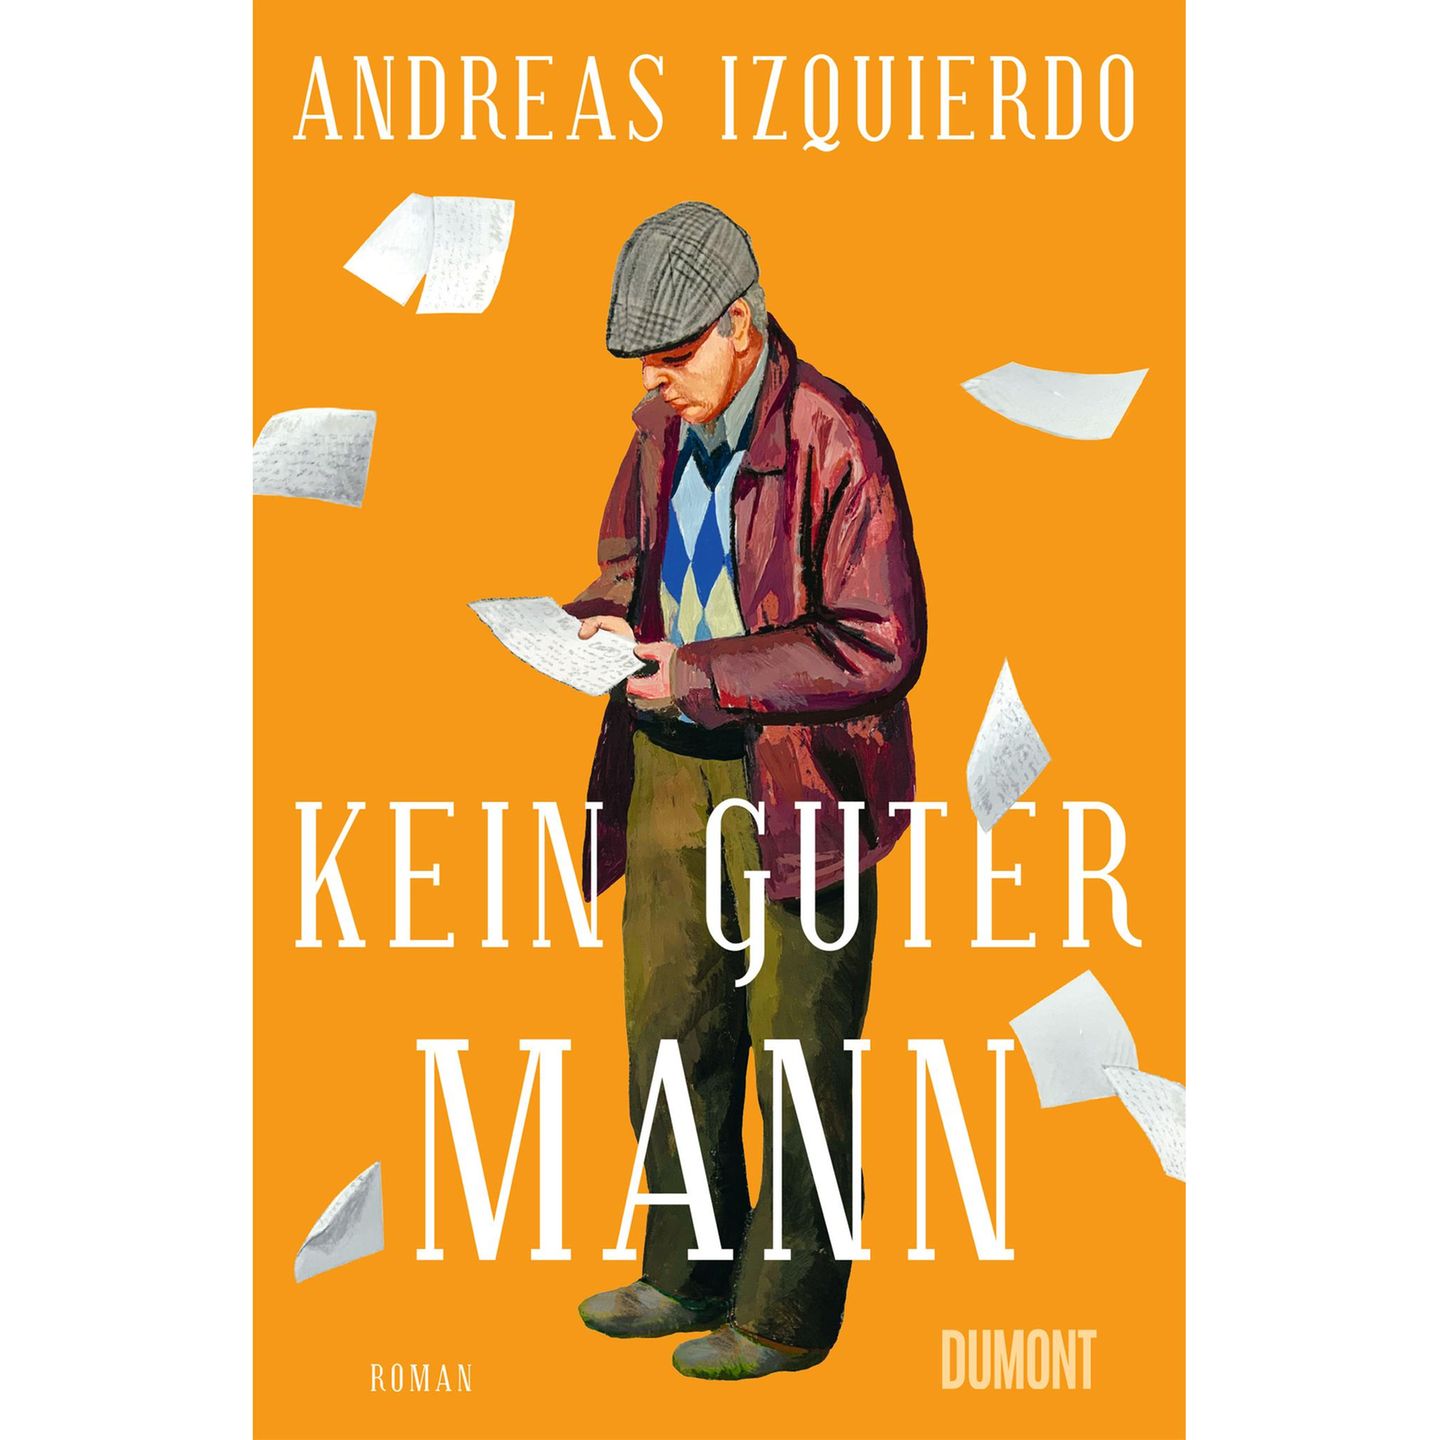 Andreas Izquierdo: Kein guter Mann